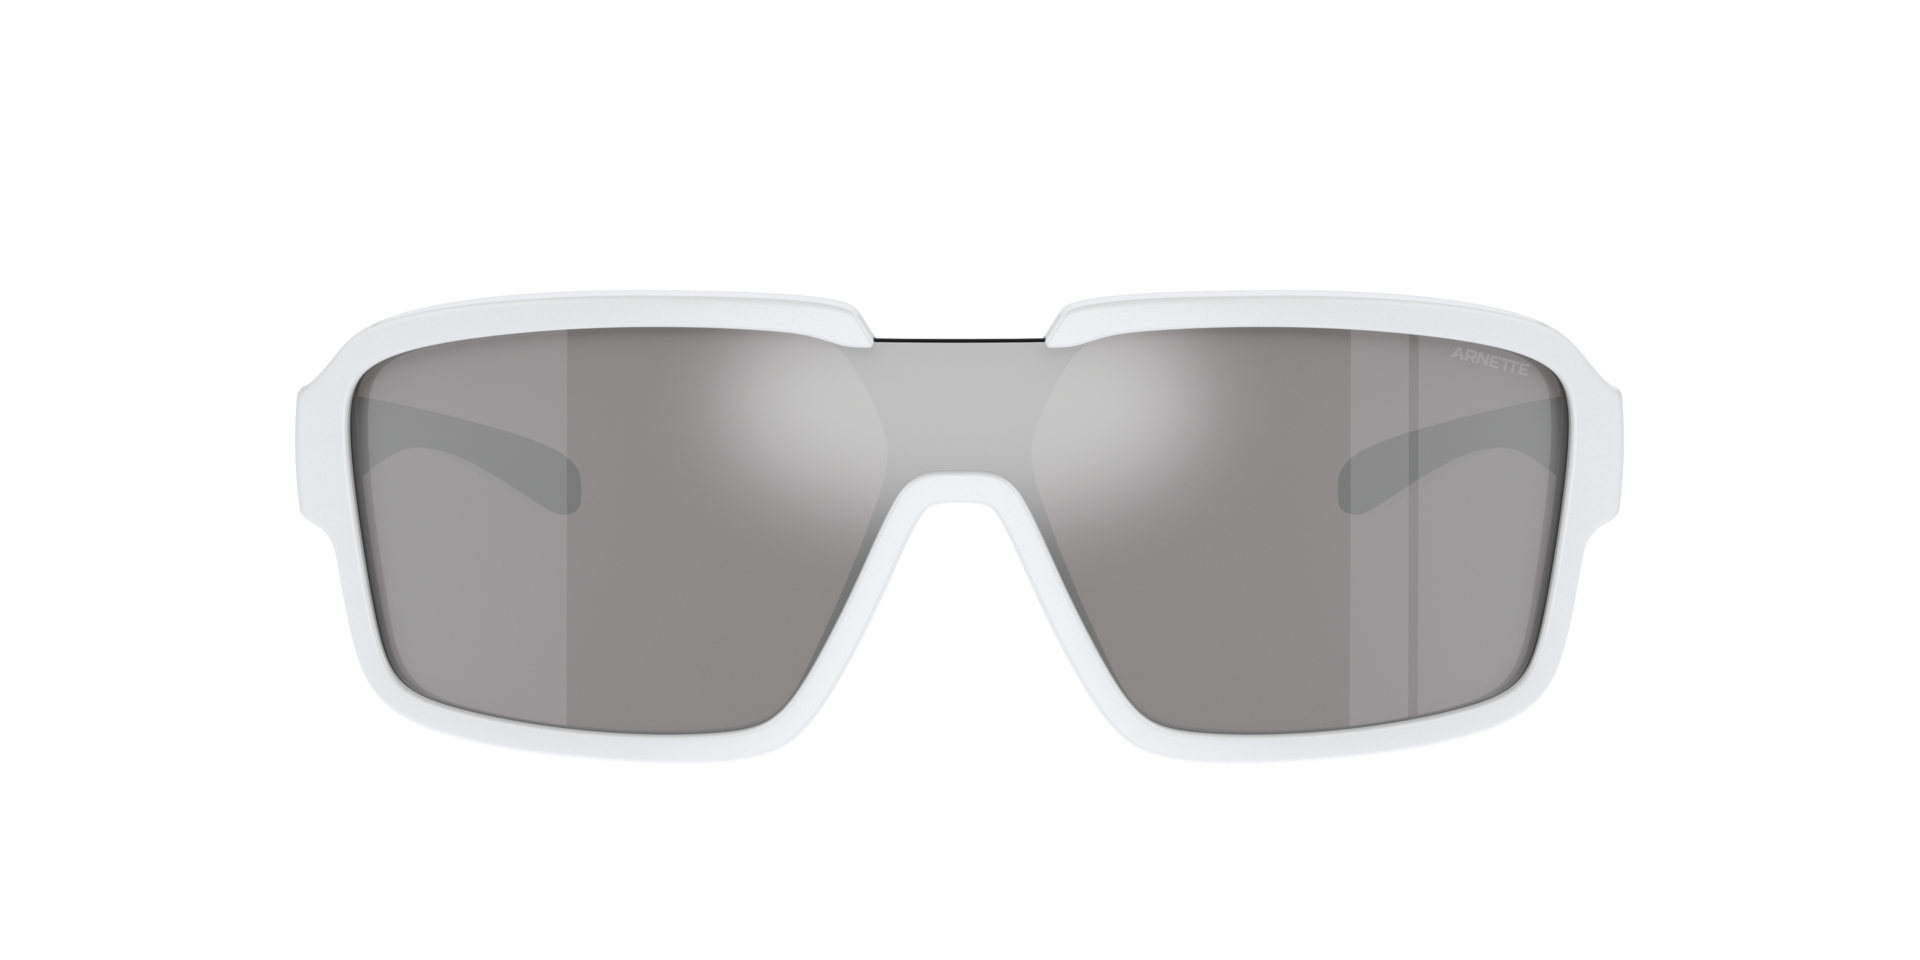 Das Bild zeigt die Sonnenbrille AN4335 27796G von der Marke Arnette in weiß.